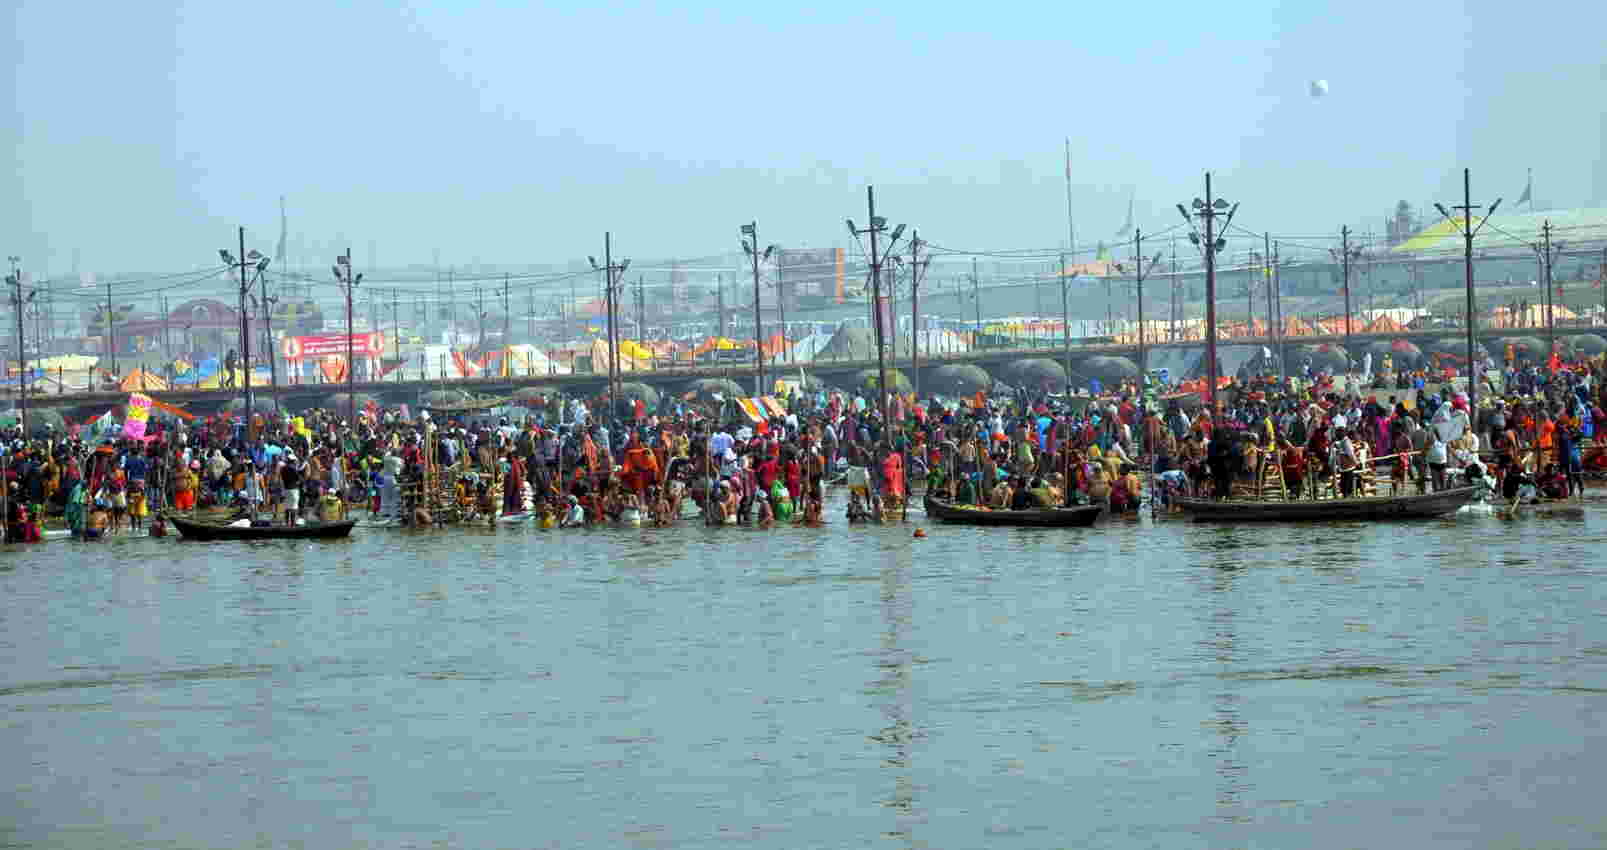 Haridwar Kumbh Mela 2021: कुंभ मेले में बिना रजिस्ट्रेशन नहीं मिलेगी एंट्री, जारी होगा ई-पास